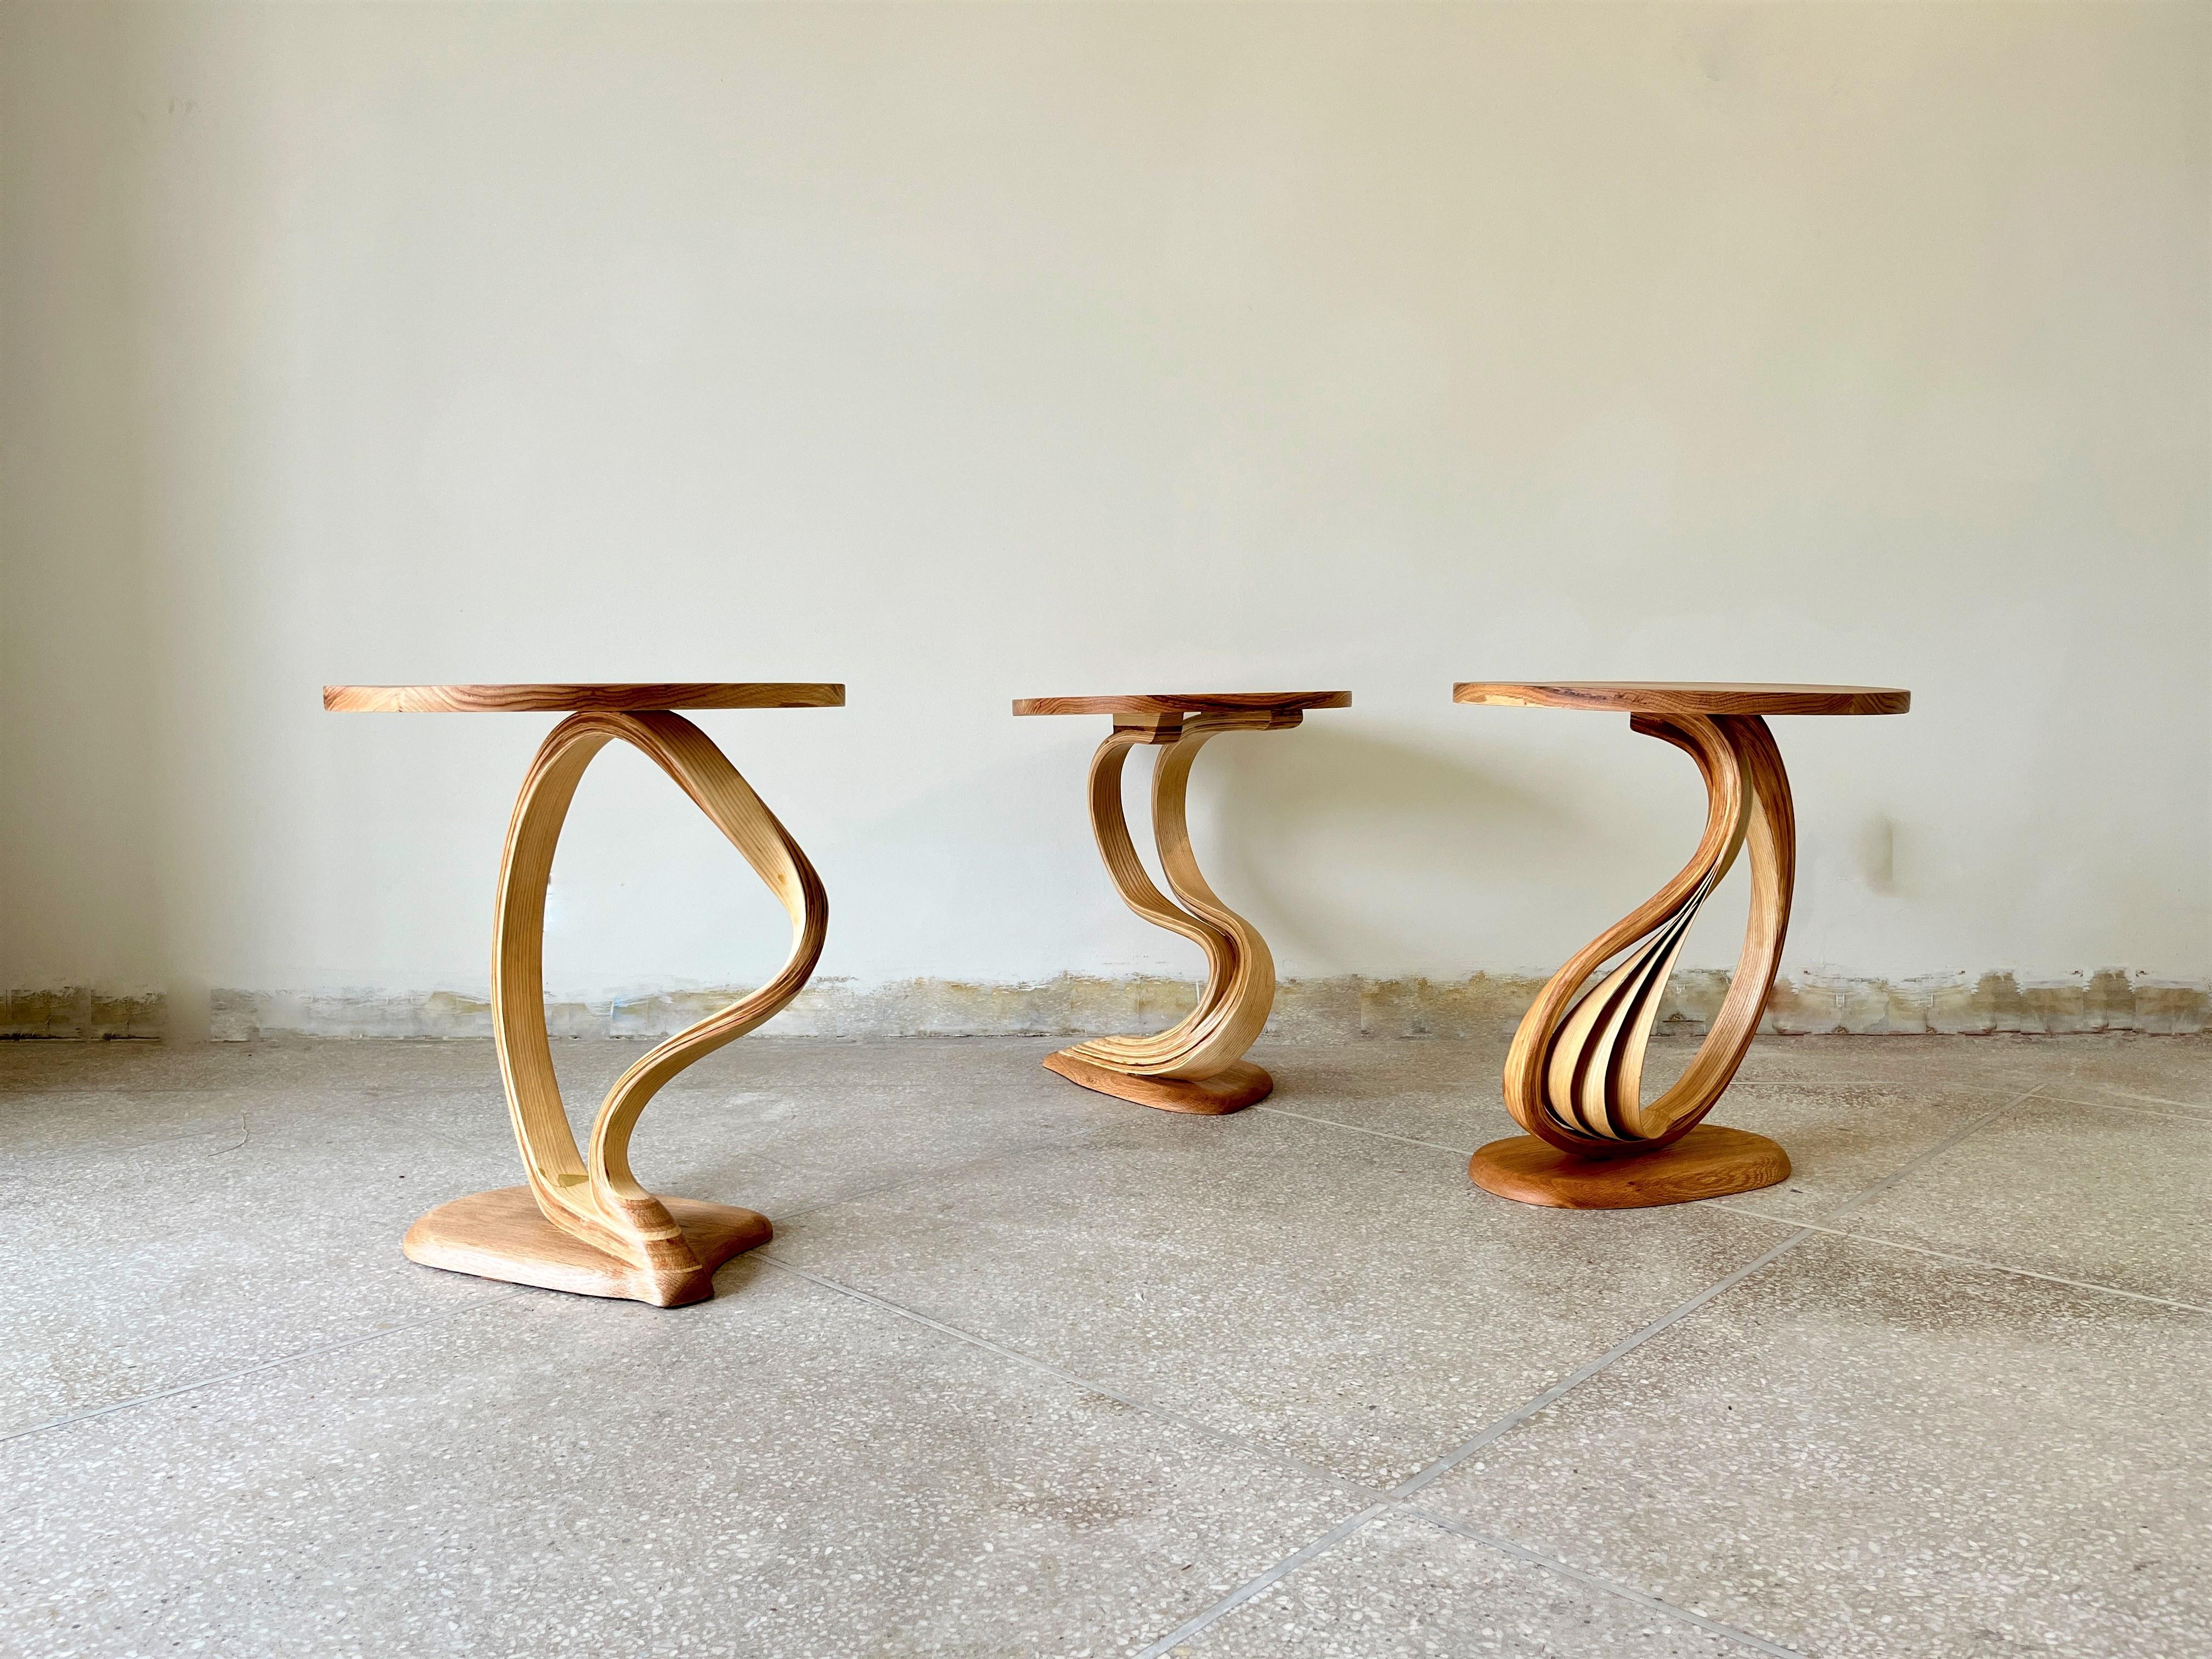 Les tables d'appoint Pars sont fabriquées en bois courbé par Raka Studio.

L'élément principal de cette pièce est le mouvement organique du bois courbé entre le sommet et la base. Les proportions du plateau et de la base sont faites pour mettre en